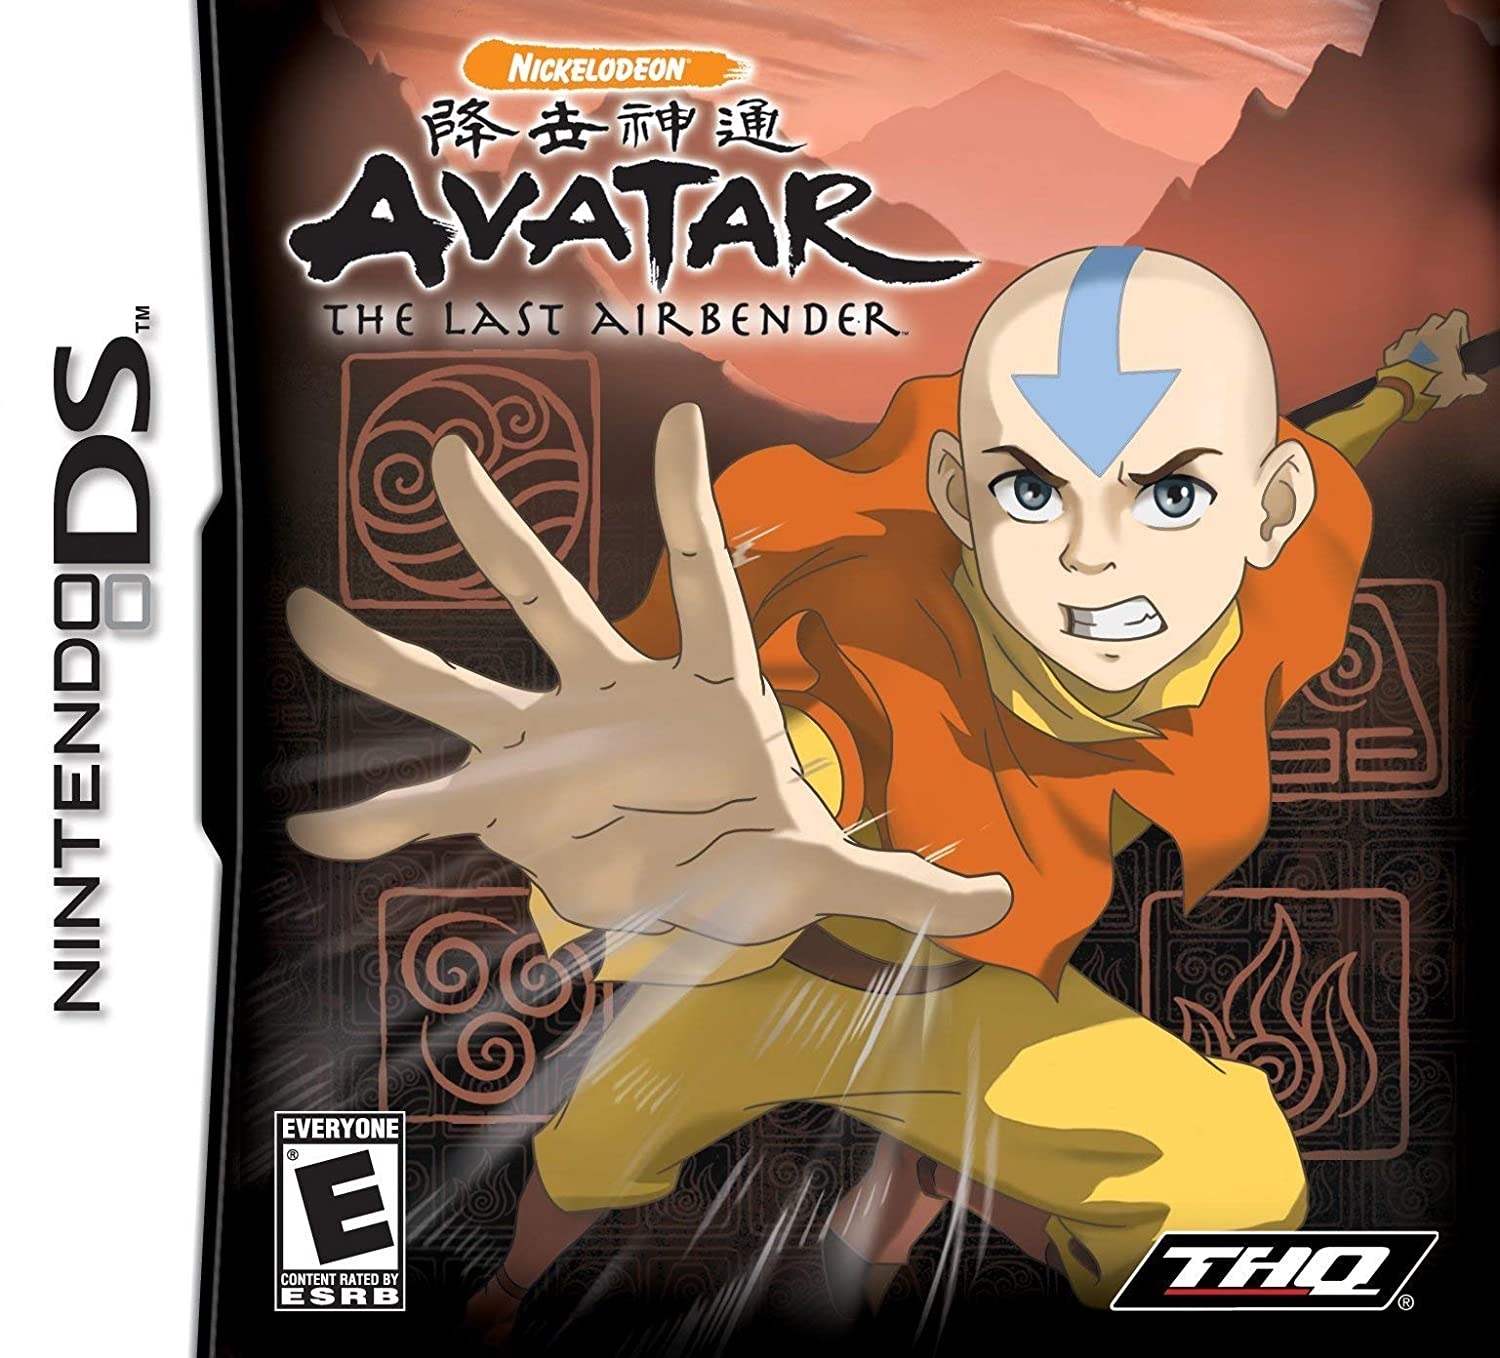 Avatar Games DS 2024: 
Mang đến cho bạn những trận chiến đầy kịch tính, Avatar Games DS 2024 đưa bạn đến với một thế giới đầy mê hoặc. Sử dụng khả năng điều khiển để thực hiện các nhiệm vụ và khám phá mật cảnh của kẻ thù. Đánh bại chúng và giải phóng những người bị bắt giữ! Tận hưởng từng giây phút thú vị trong game Avatar Games DS 2024!